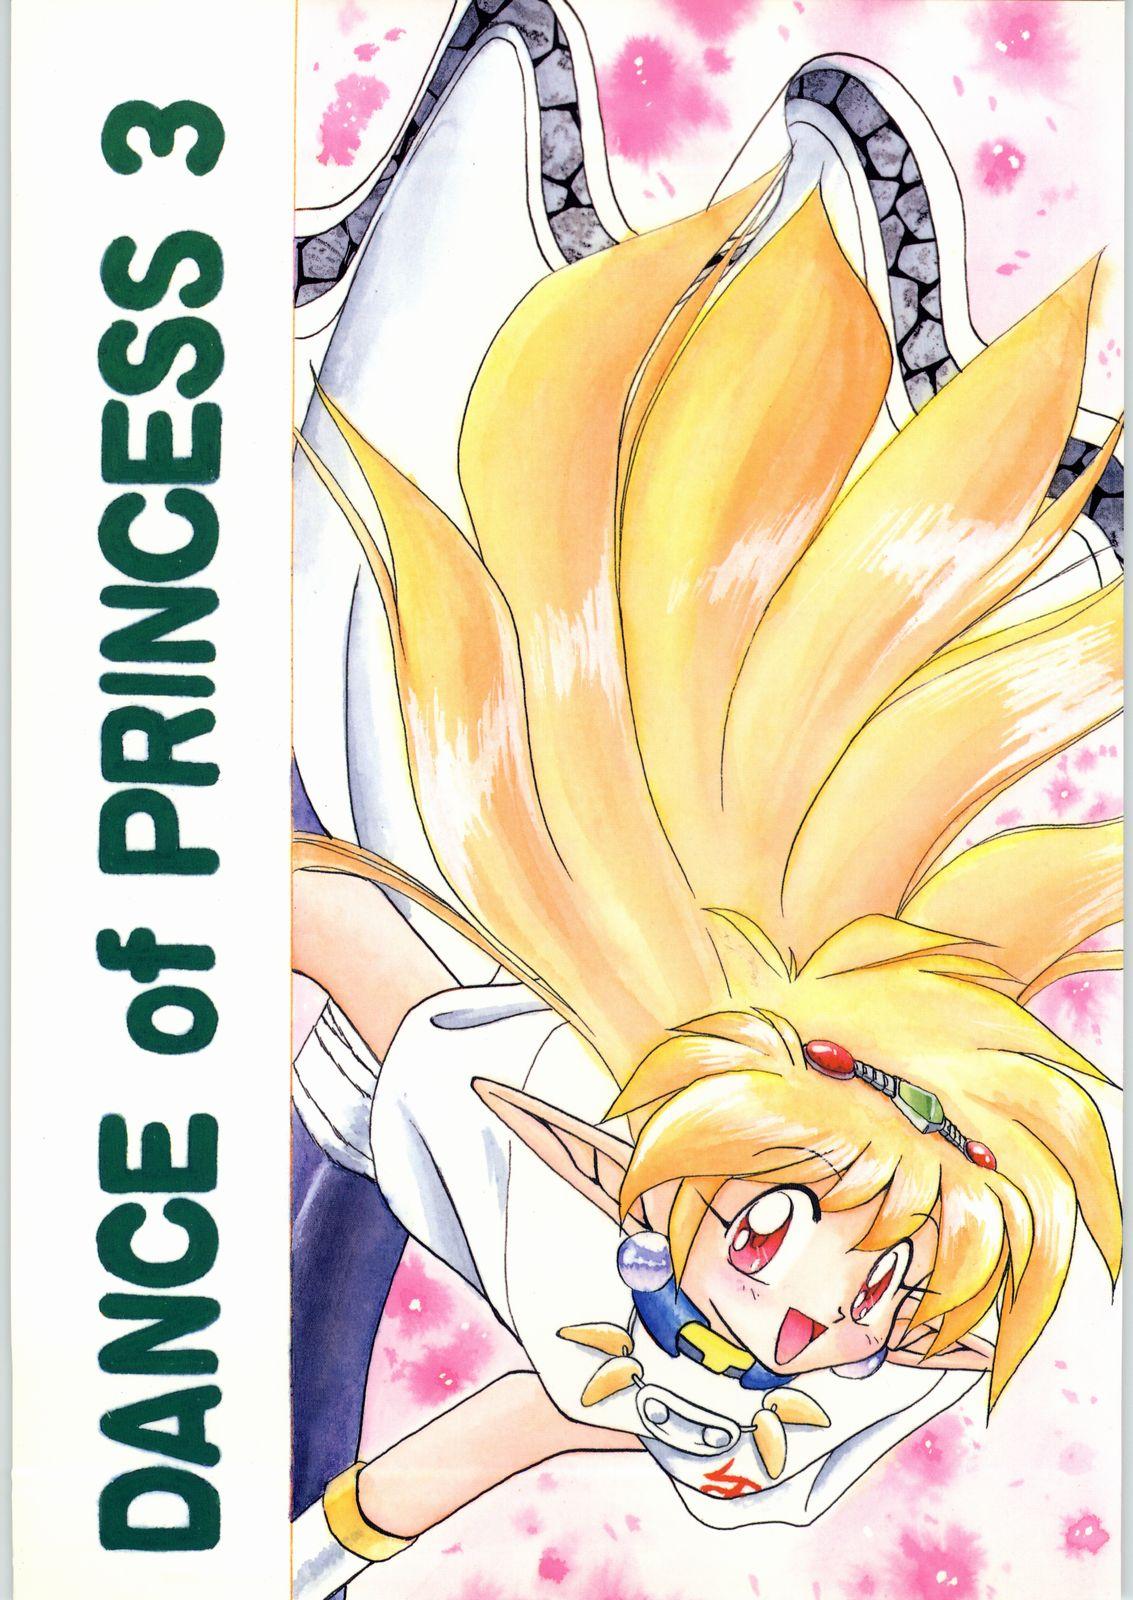 Eating Dance of Princess 3 - Sailor moon Tenchi muyo Akazukin cha cha Minky momo Ng knight lamune and 40 Tites - Page 1